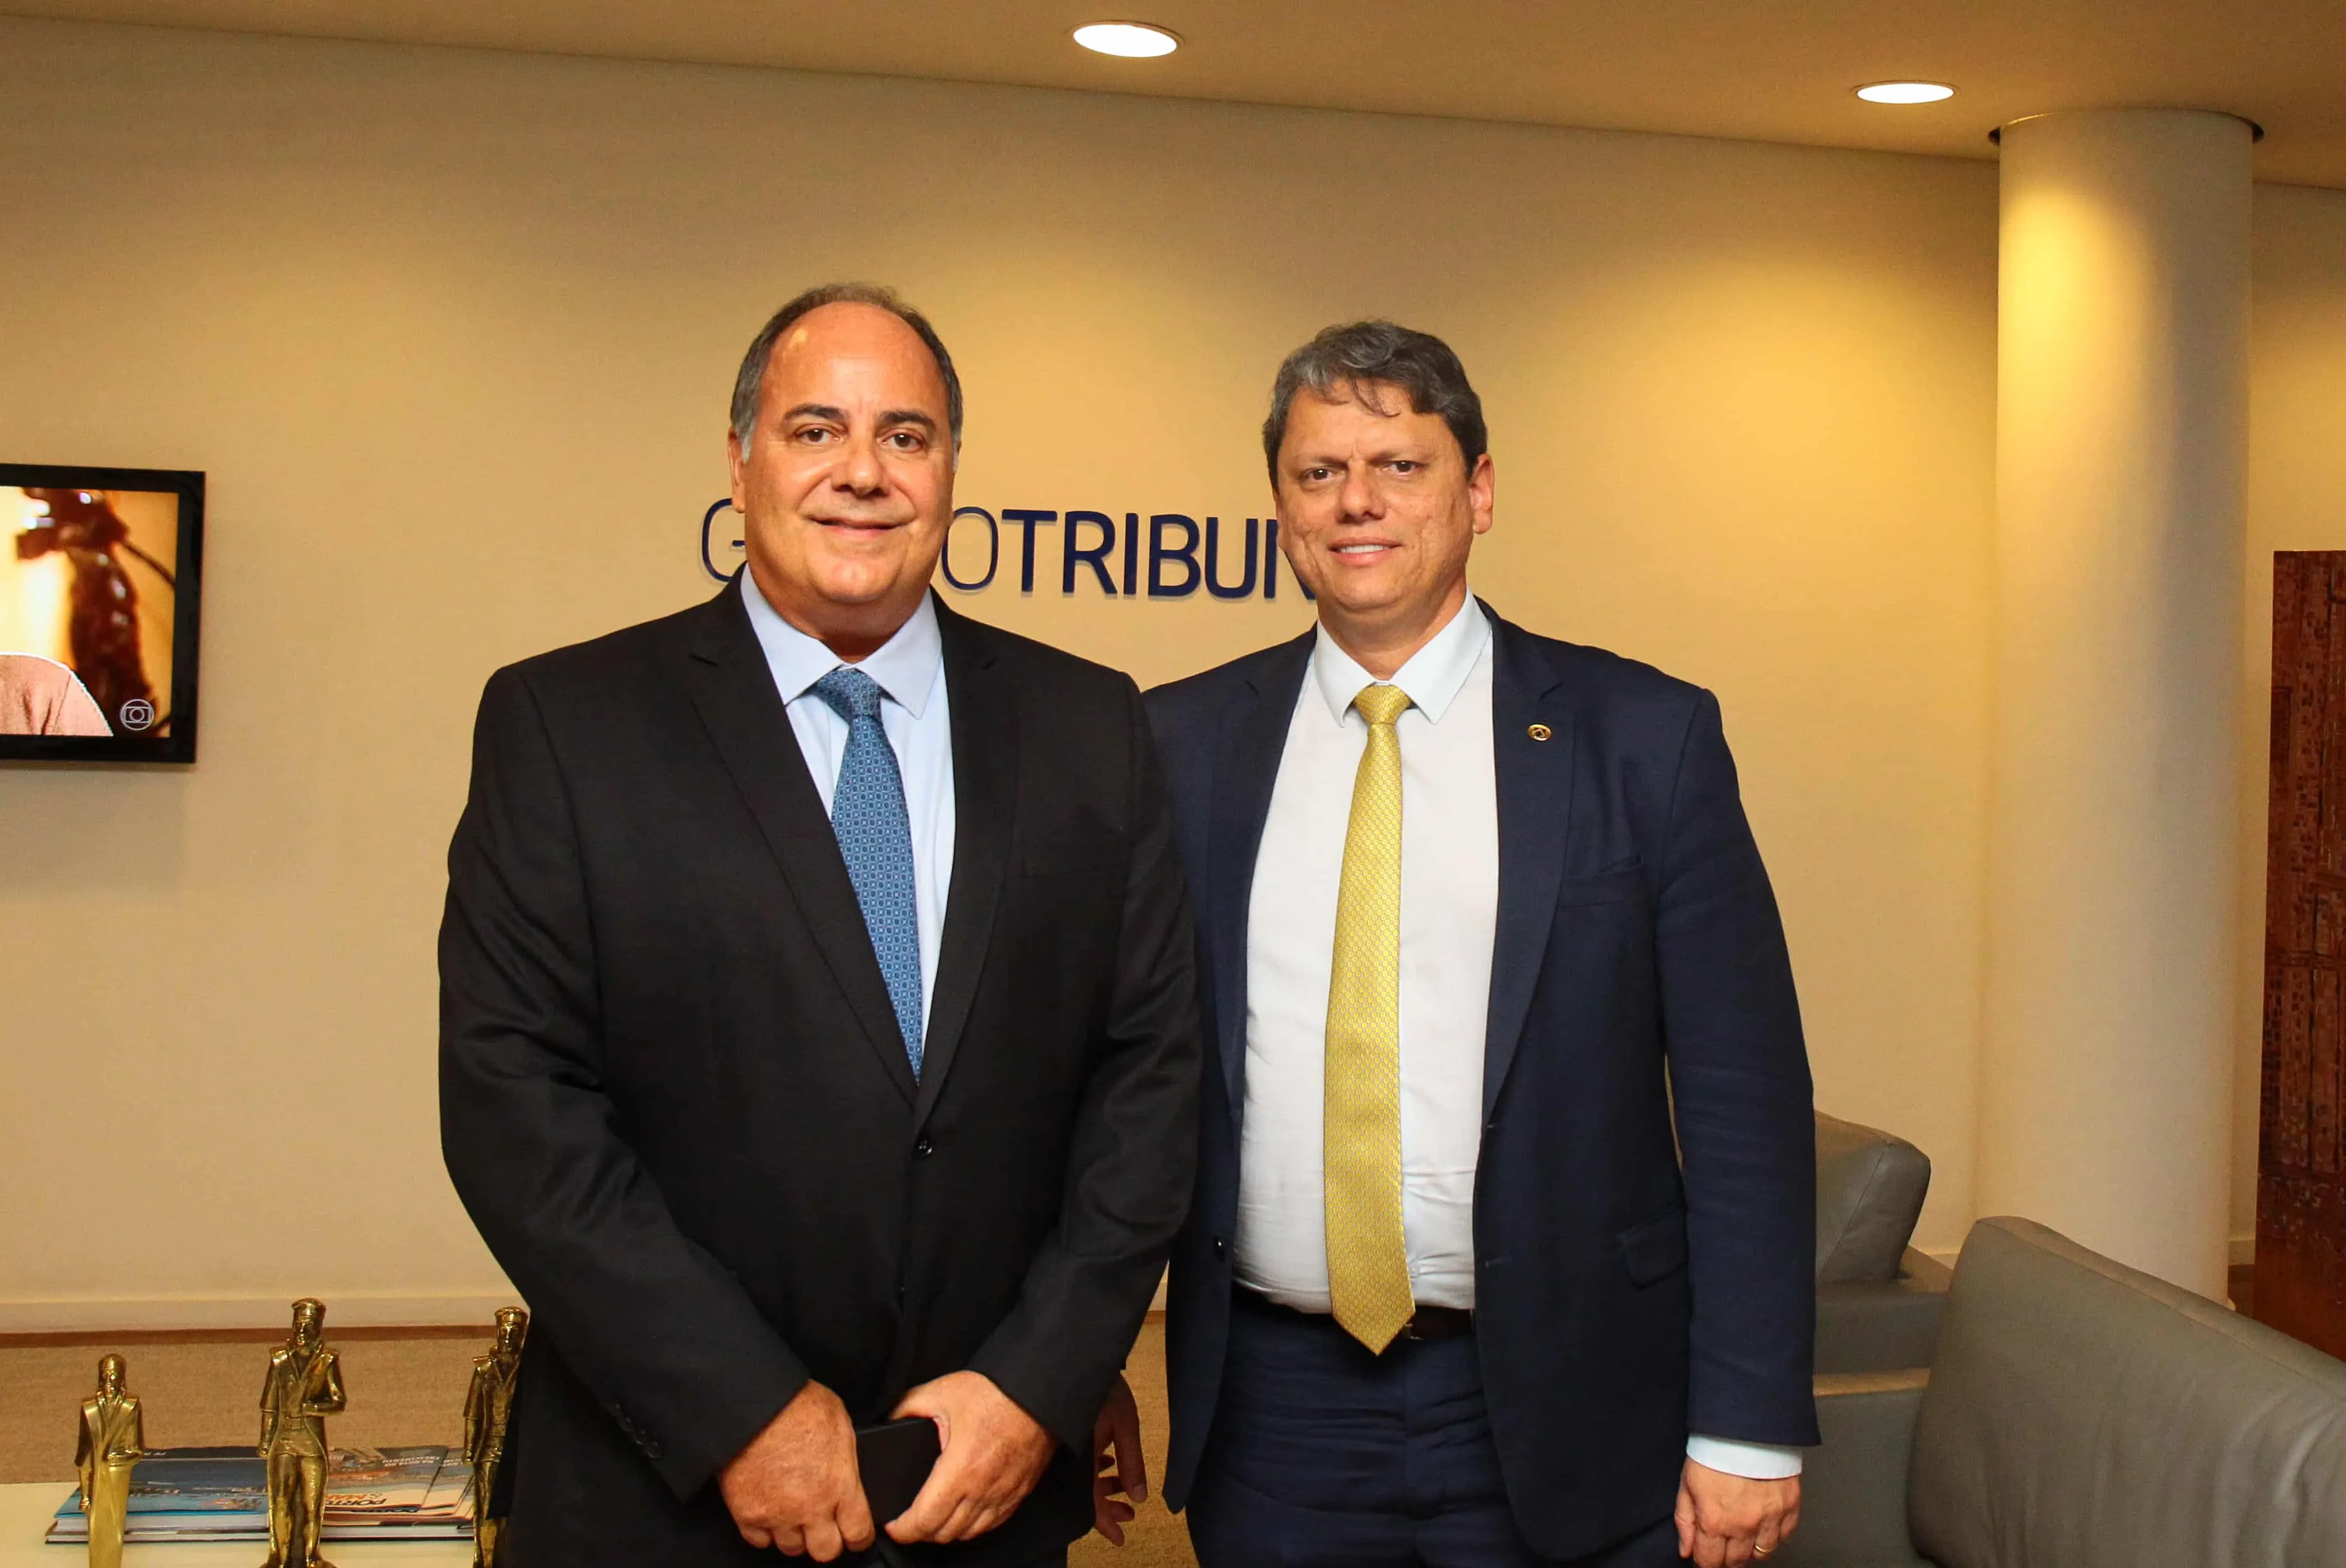 Ministro da Infraestrutura, Tarcísio Gomes de Freitas, foi recebido pelo diretor-presidente da TV Tribuna, Roberto Clemente Santini